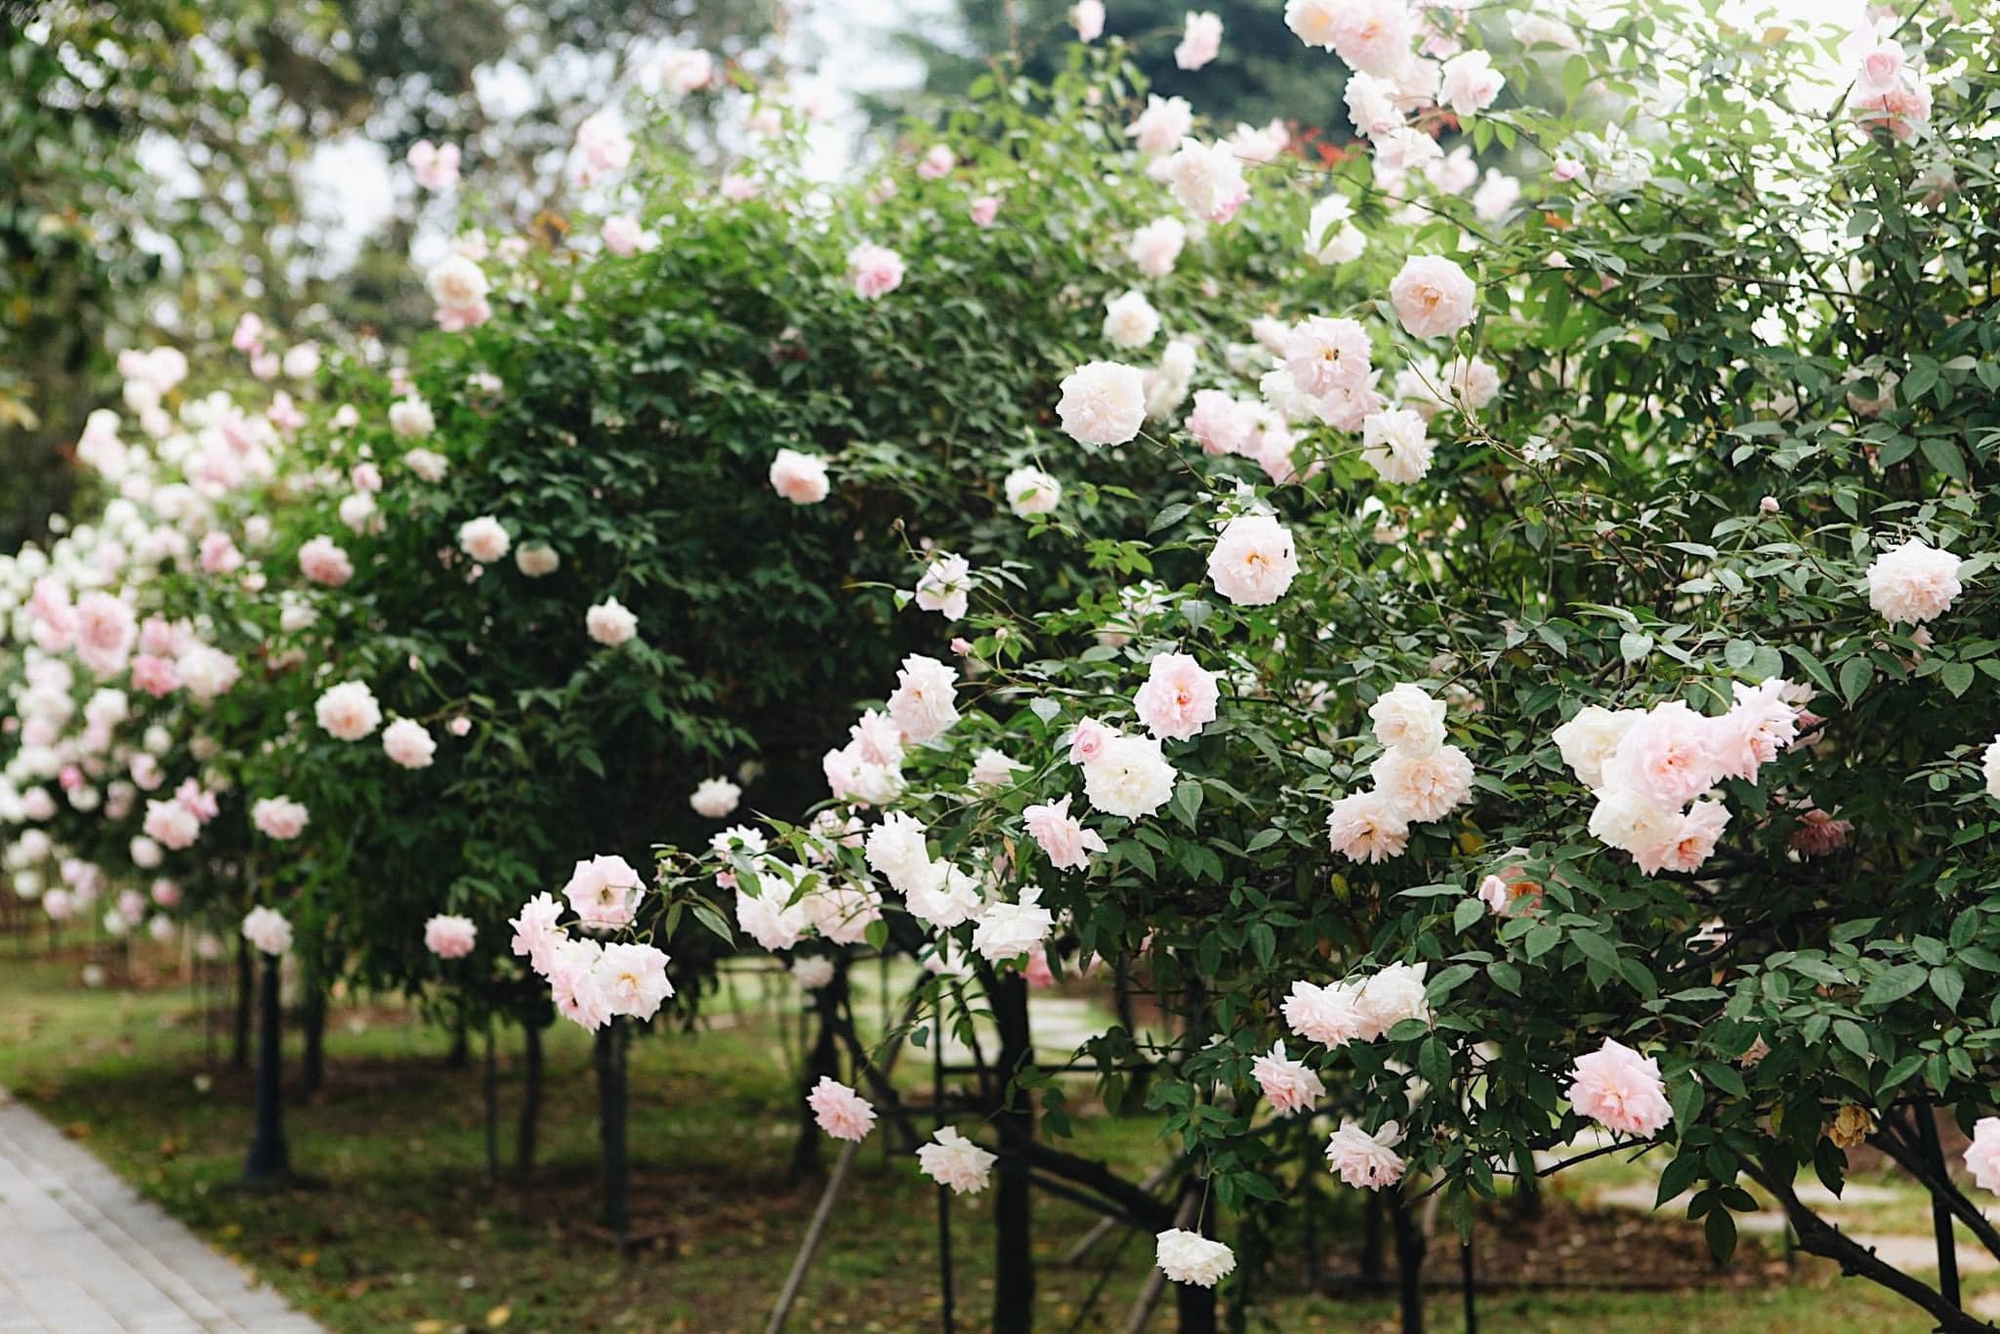 Trường đại học gây sốt với vườn hồng hàng trăm loại đẹp như cổ tích: Chỉ ngắm thôi cũng đã đầy cảm hứng học tập- Ảnh 2.